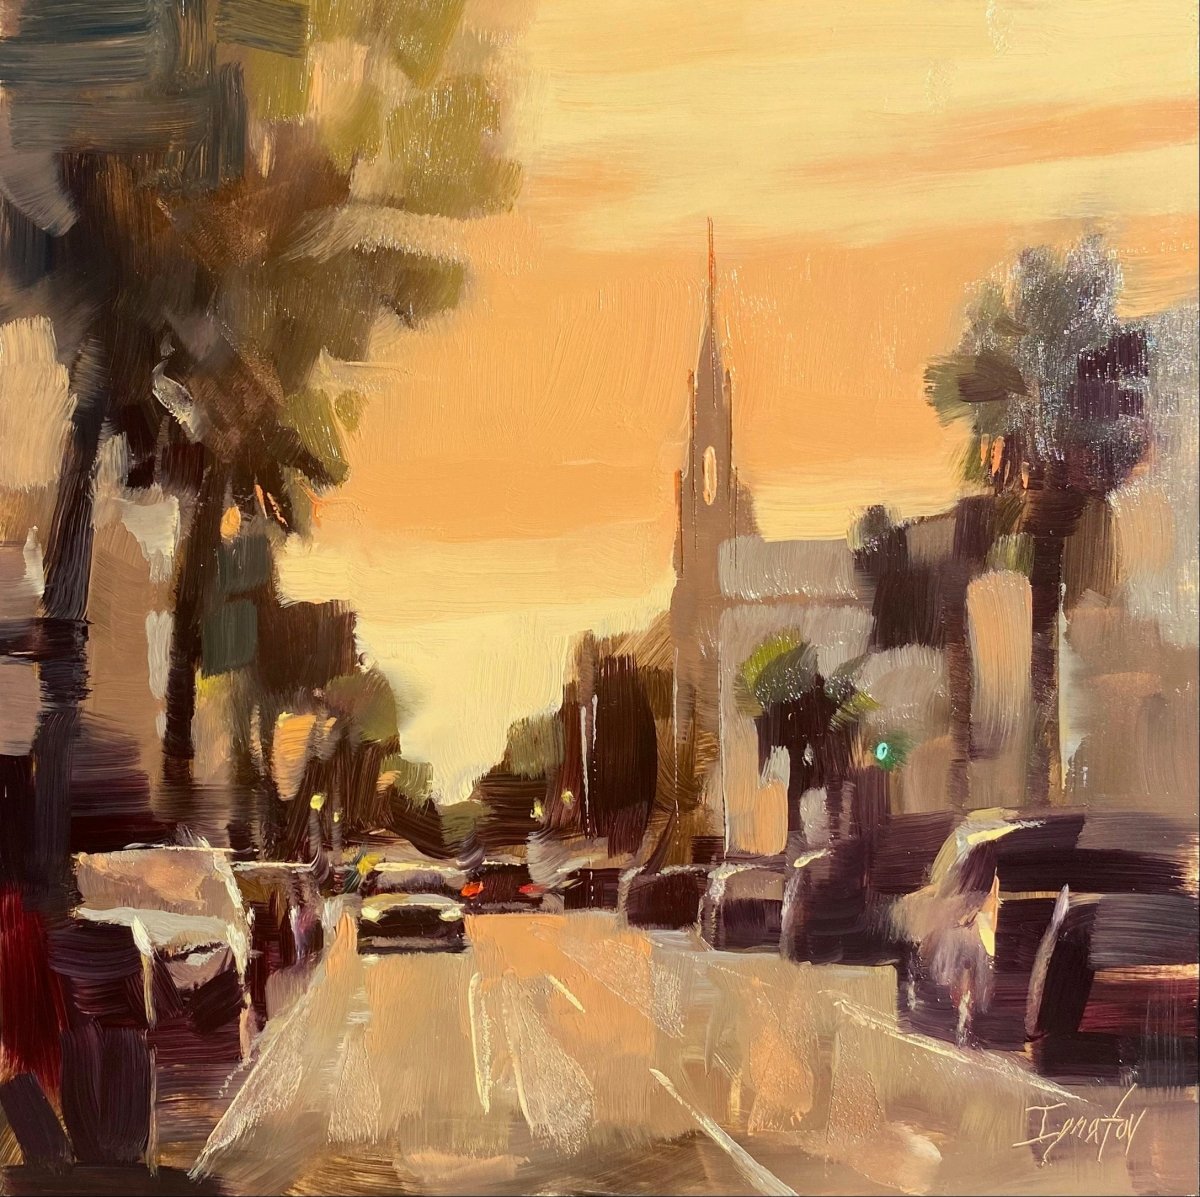 Broad Street Sunset, Study by Ignat Ignatov at LePrince Galleries